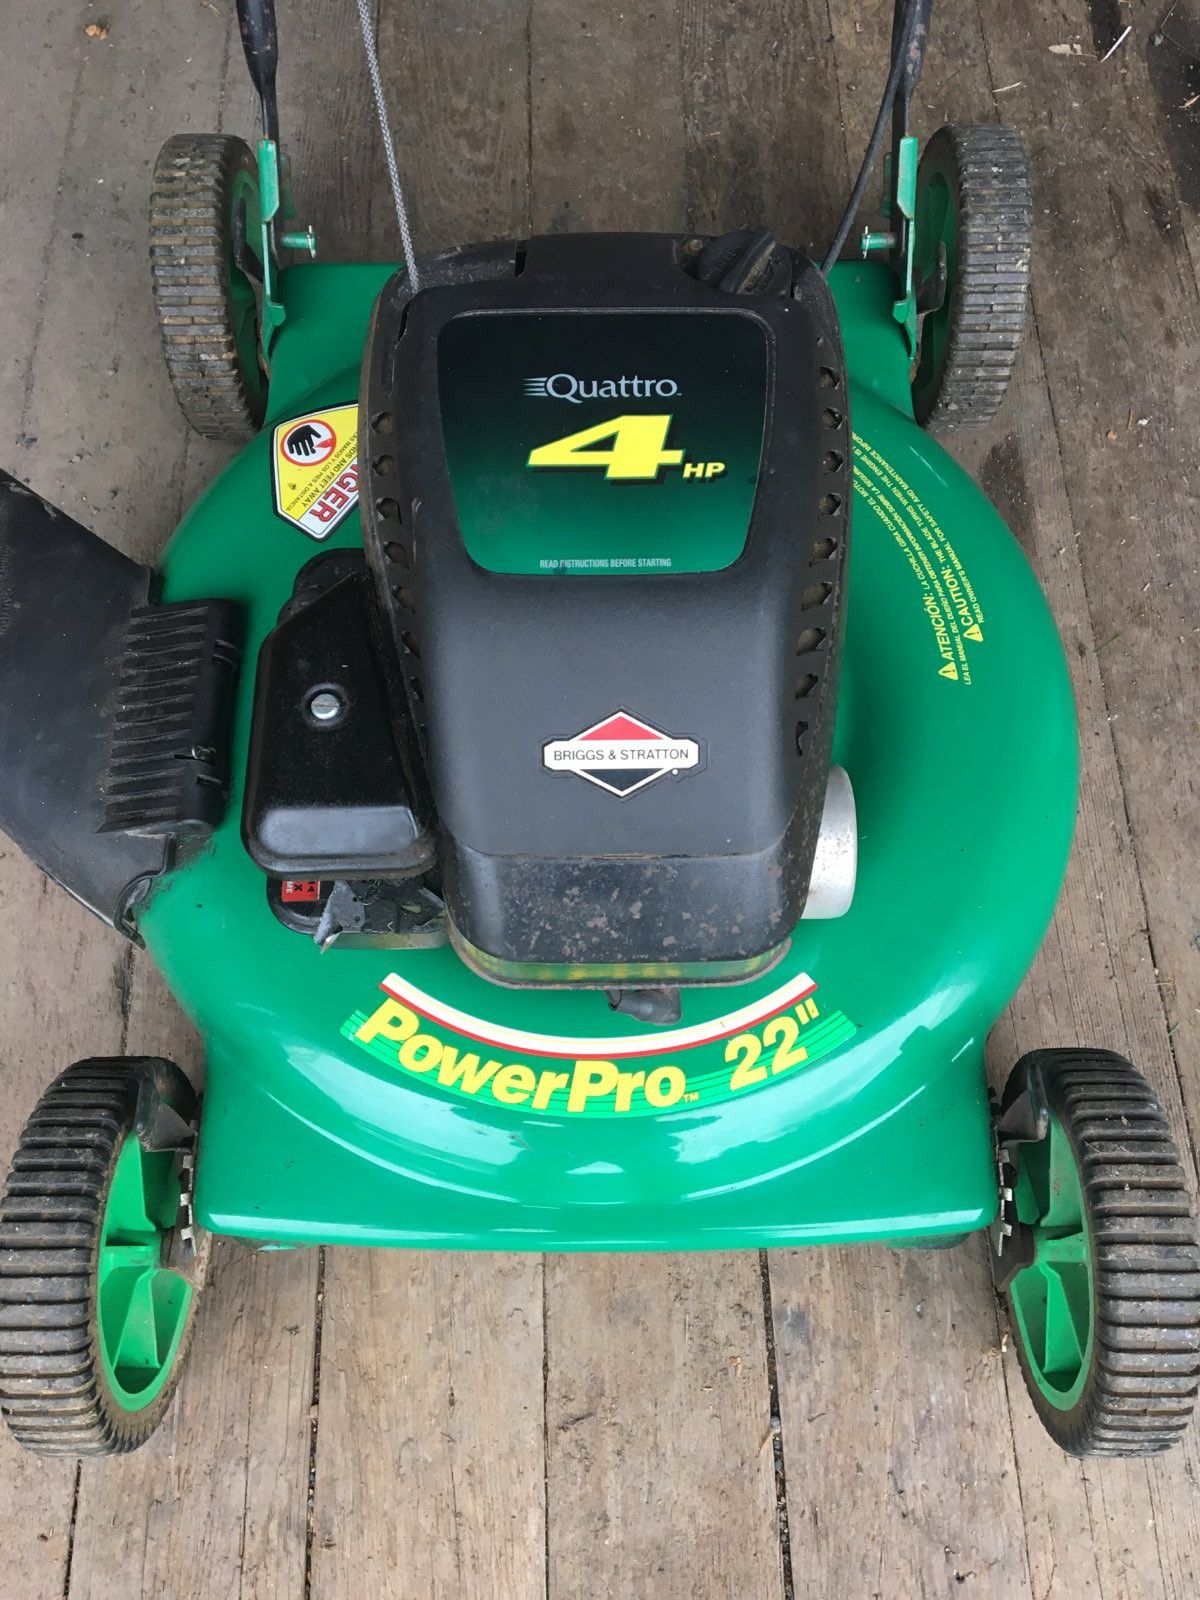 Lawn mower lawnmower. Power Pro 22"